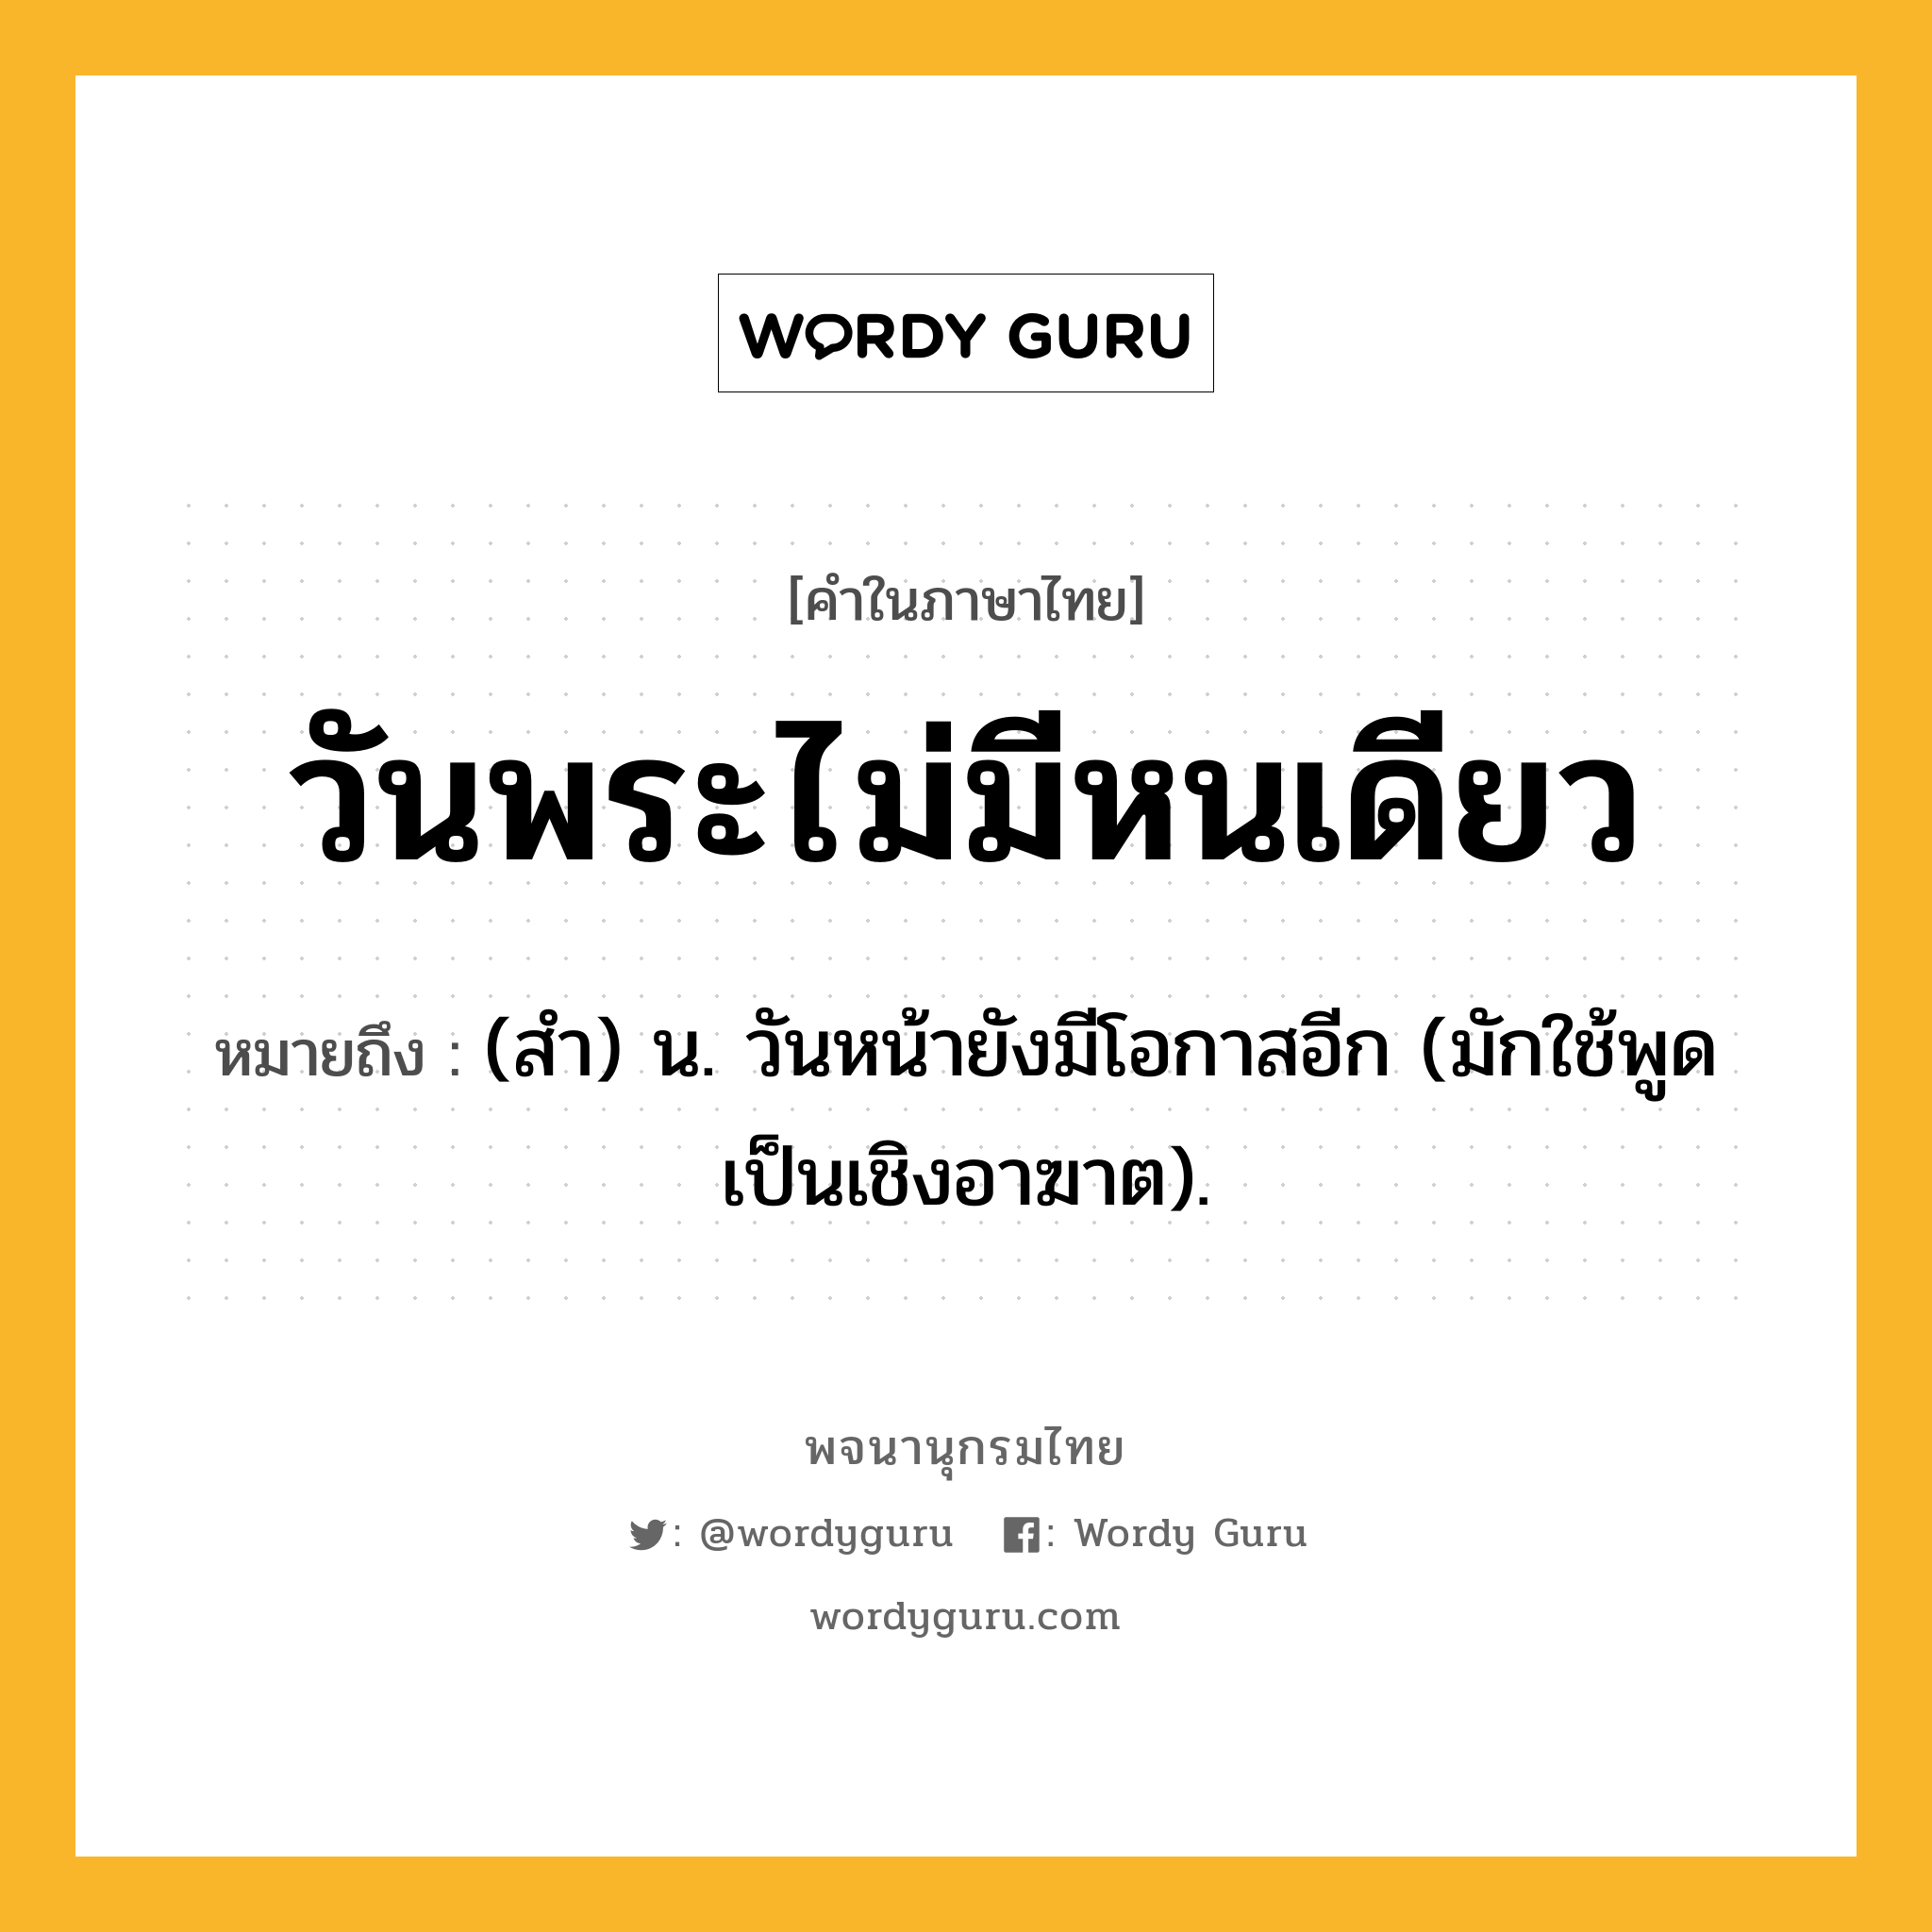 วันพระไม่มีหนเดียว หมายถึงอะไร?, คำในภาษาไทย วันพระไม่มีหนเดียว หมายถึง (สํา) น. วันหน้ายังมีโอกาสอีก (มักใช้พูดเป็นเชิงอาฆาต).